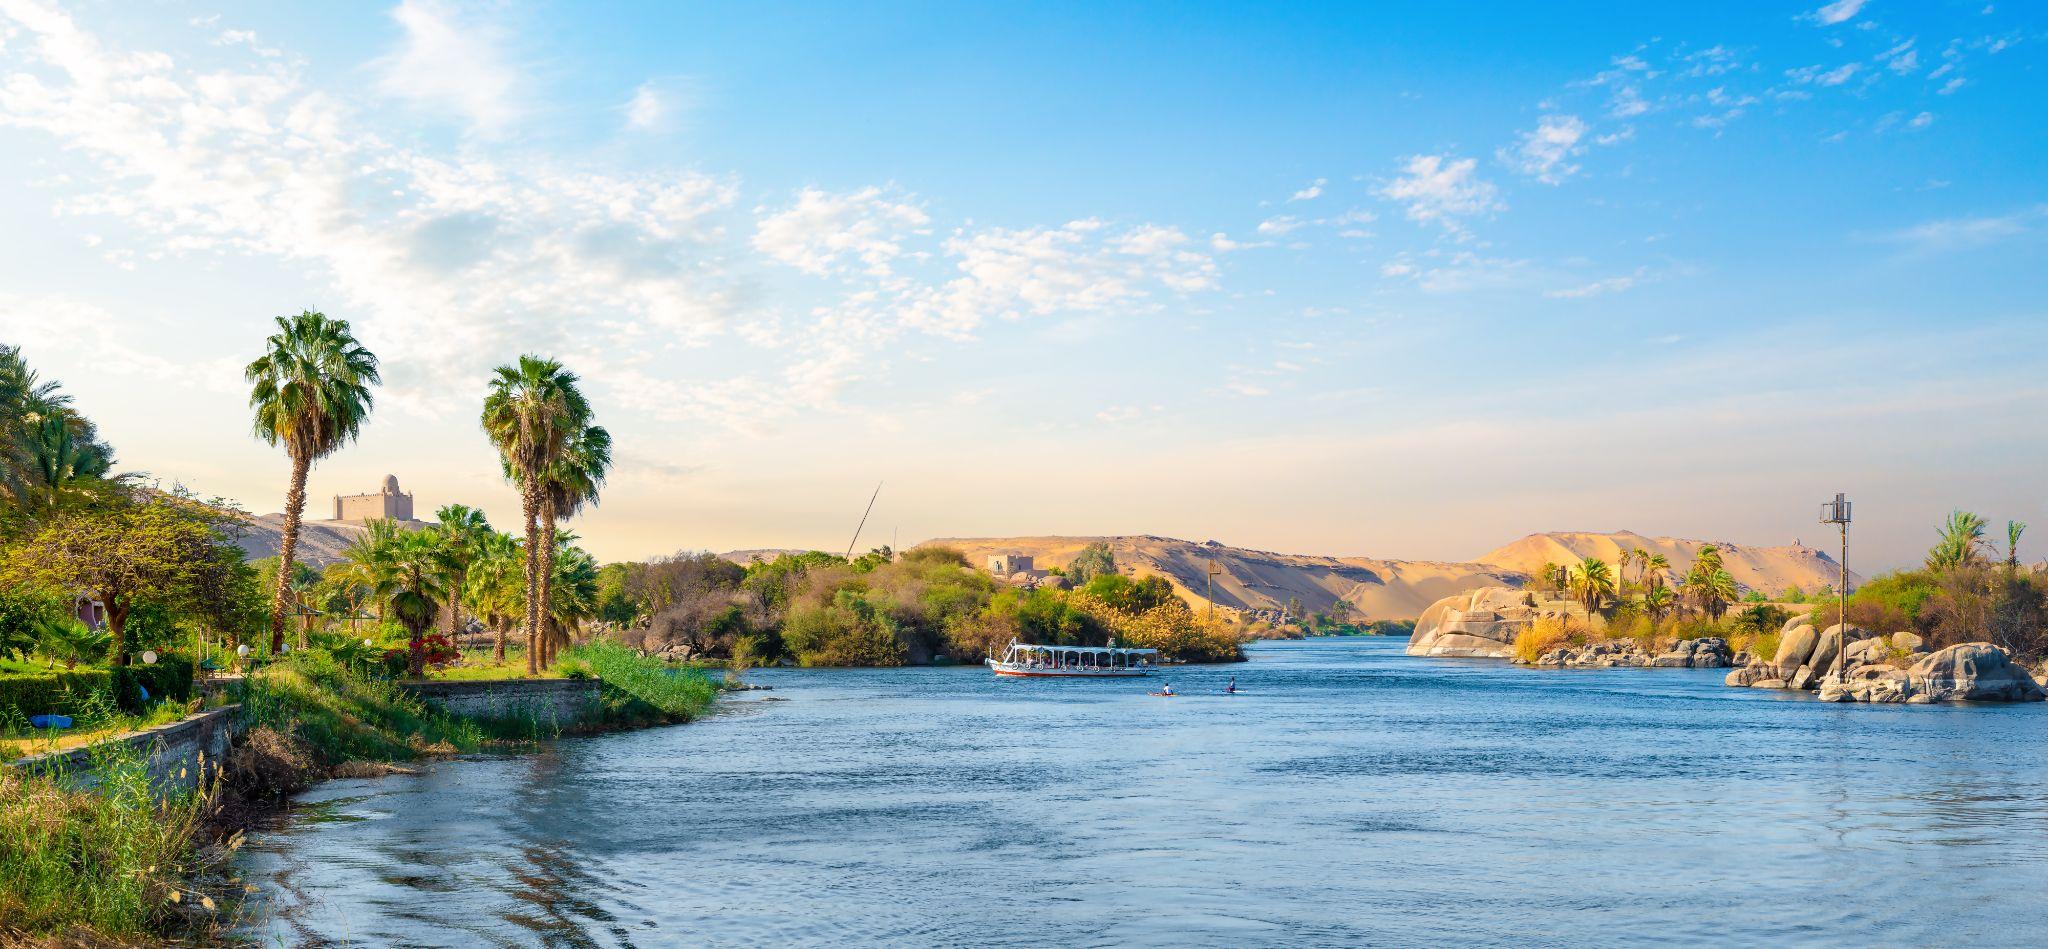 Cruceros fluviales en Egipto por el Nilo con descuento